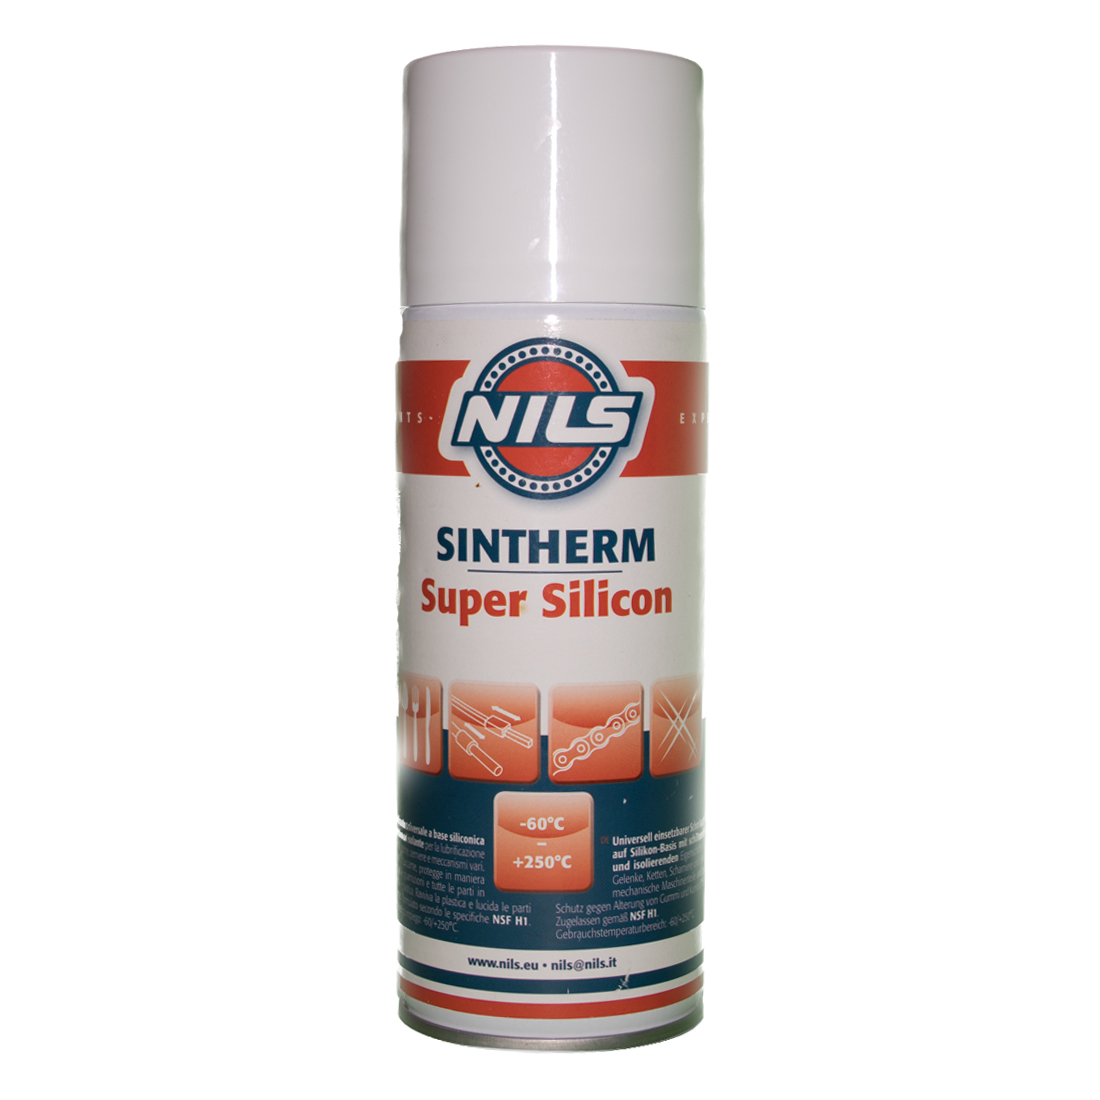 Sintherm Spray Lubrificante al Silicone NILS Bomboletta